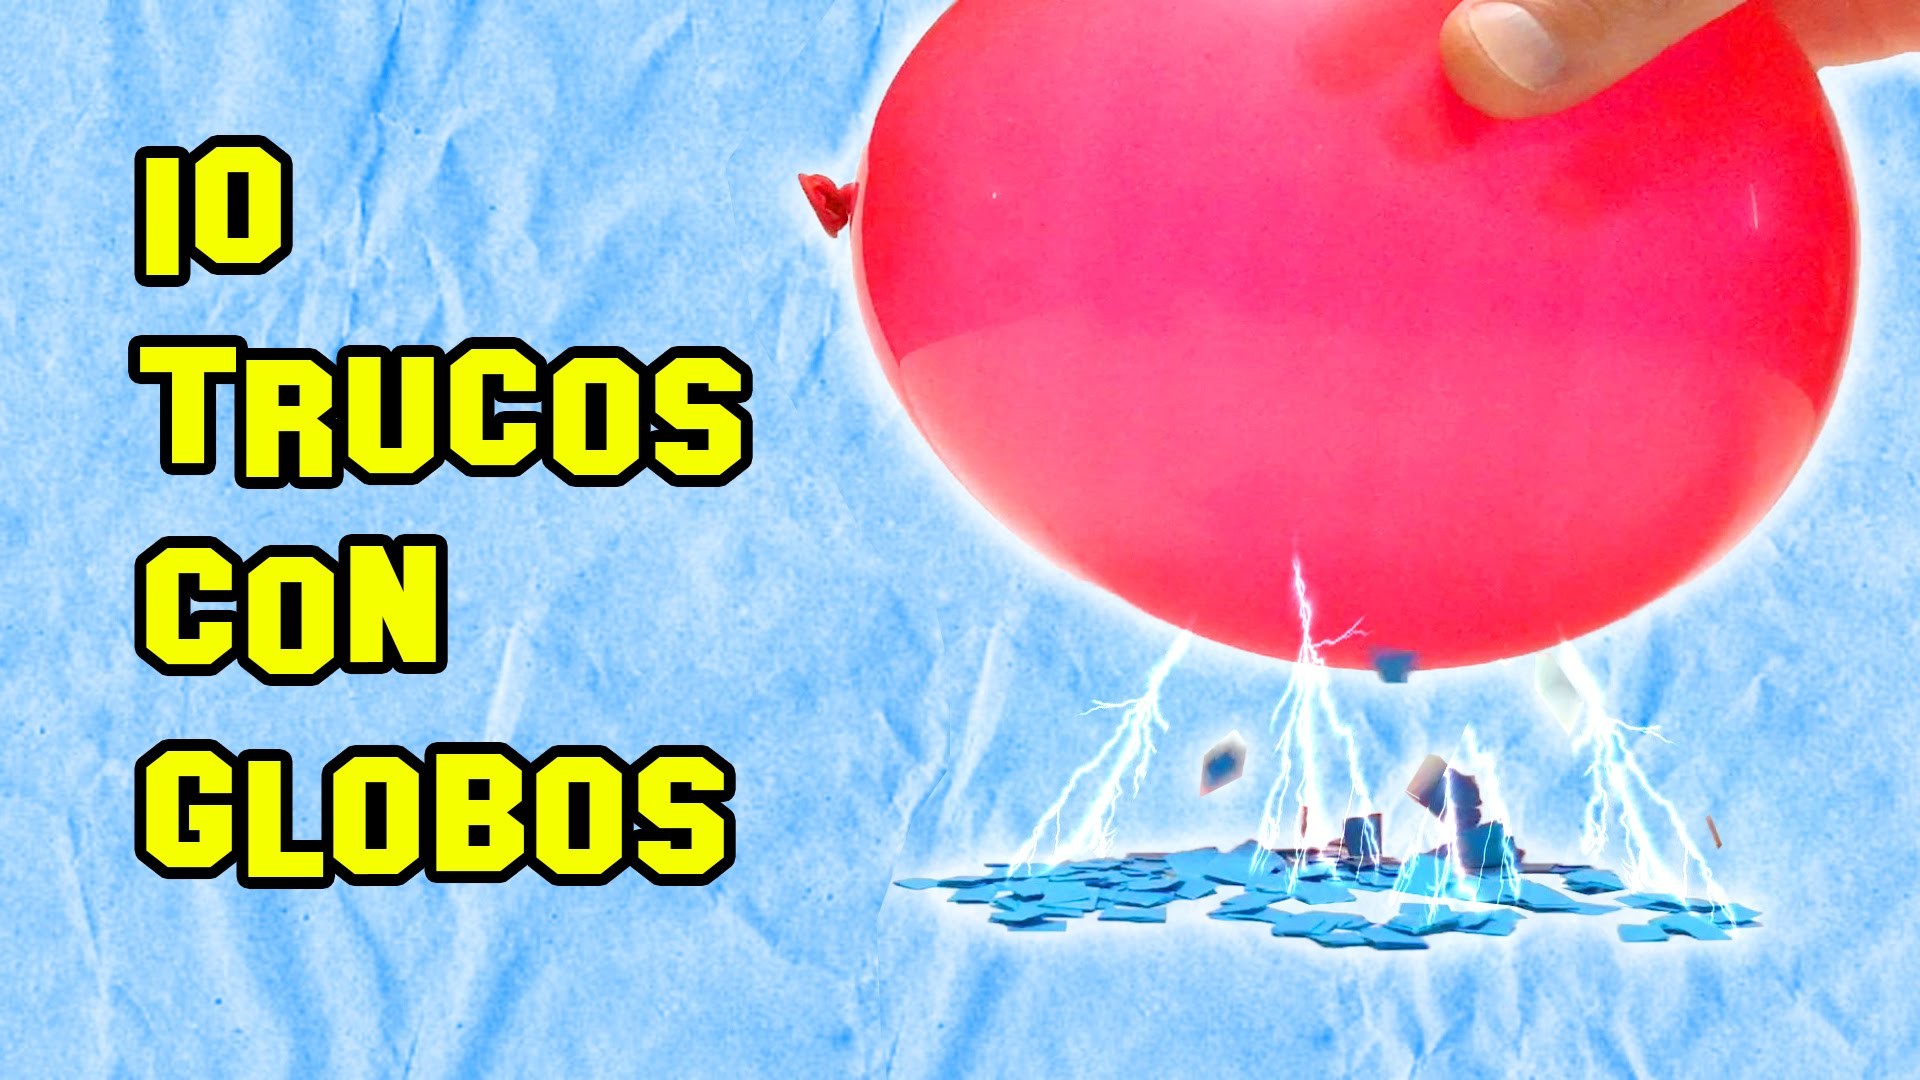 ✔ 10 Trucos Con Globos | Tricks With Balloons